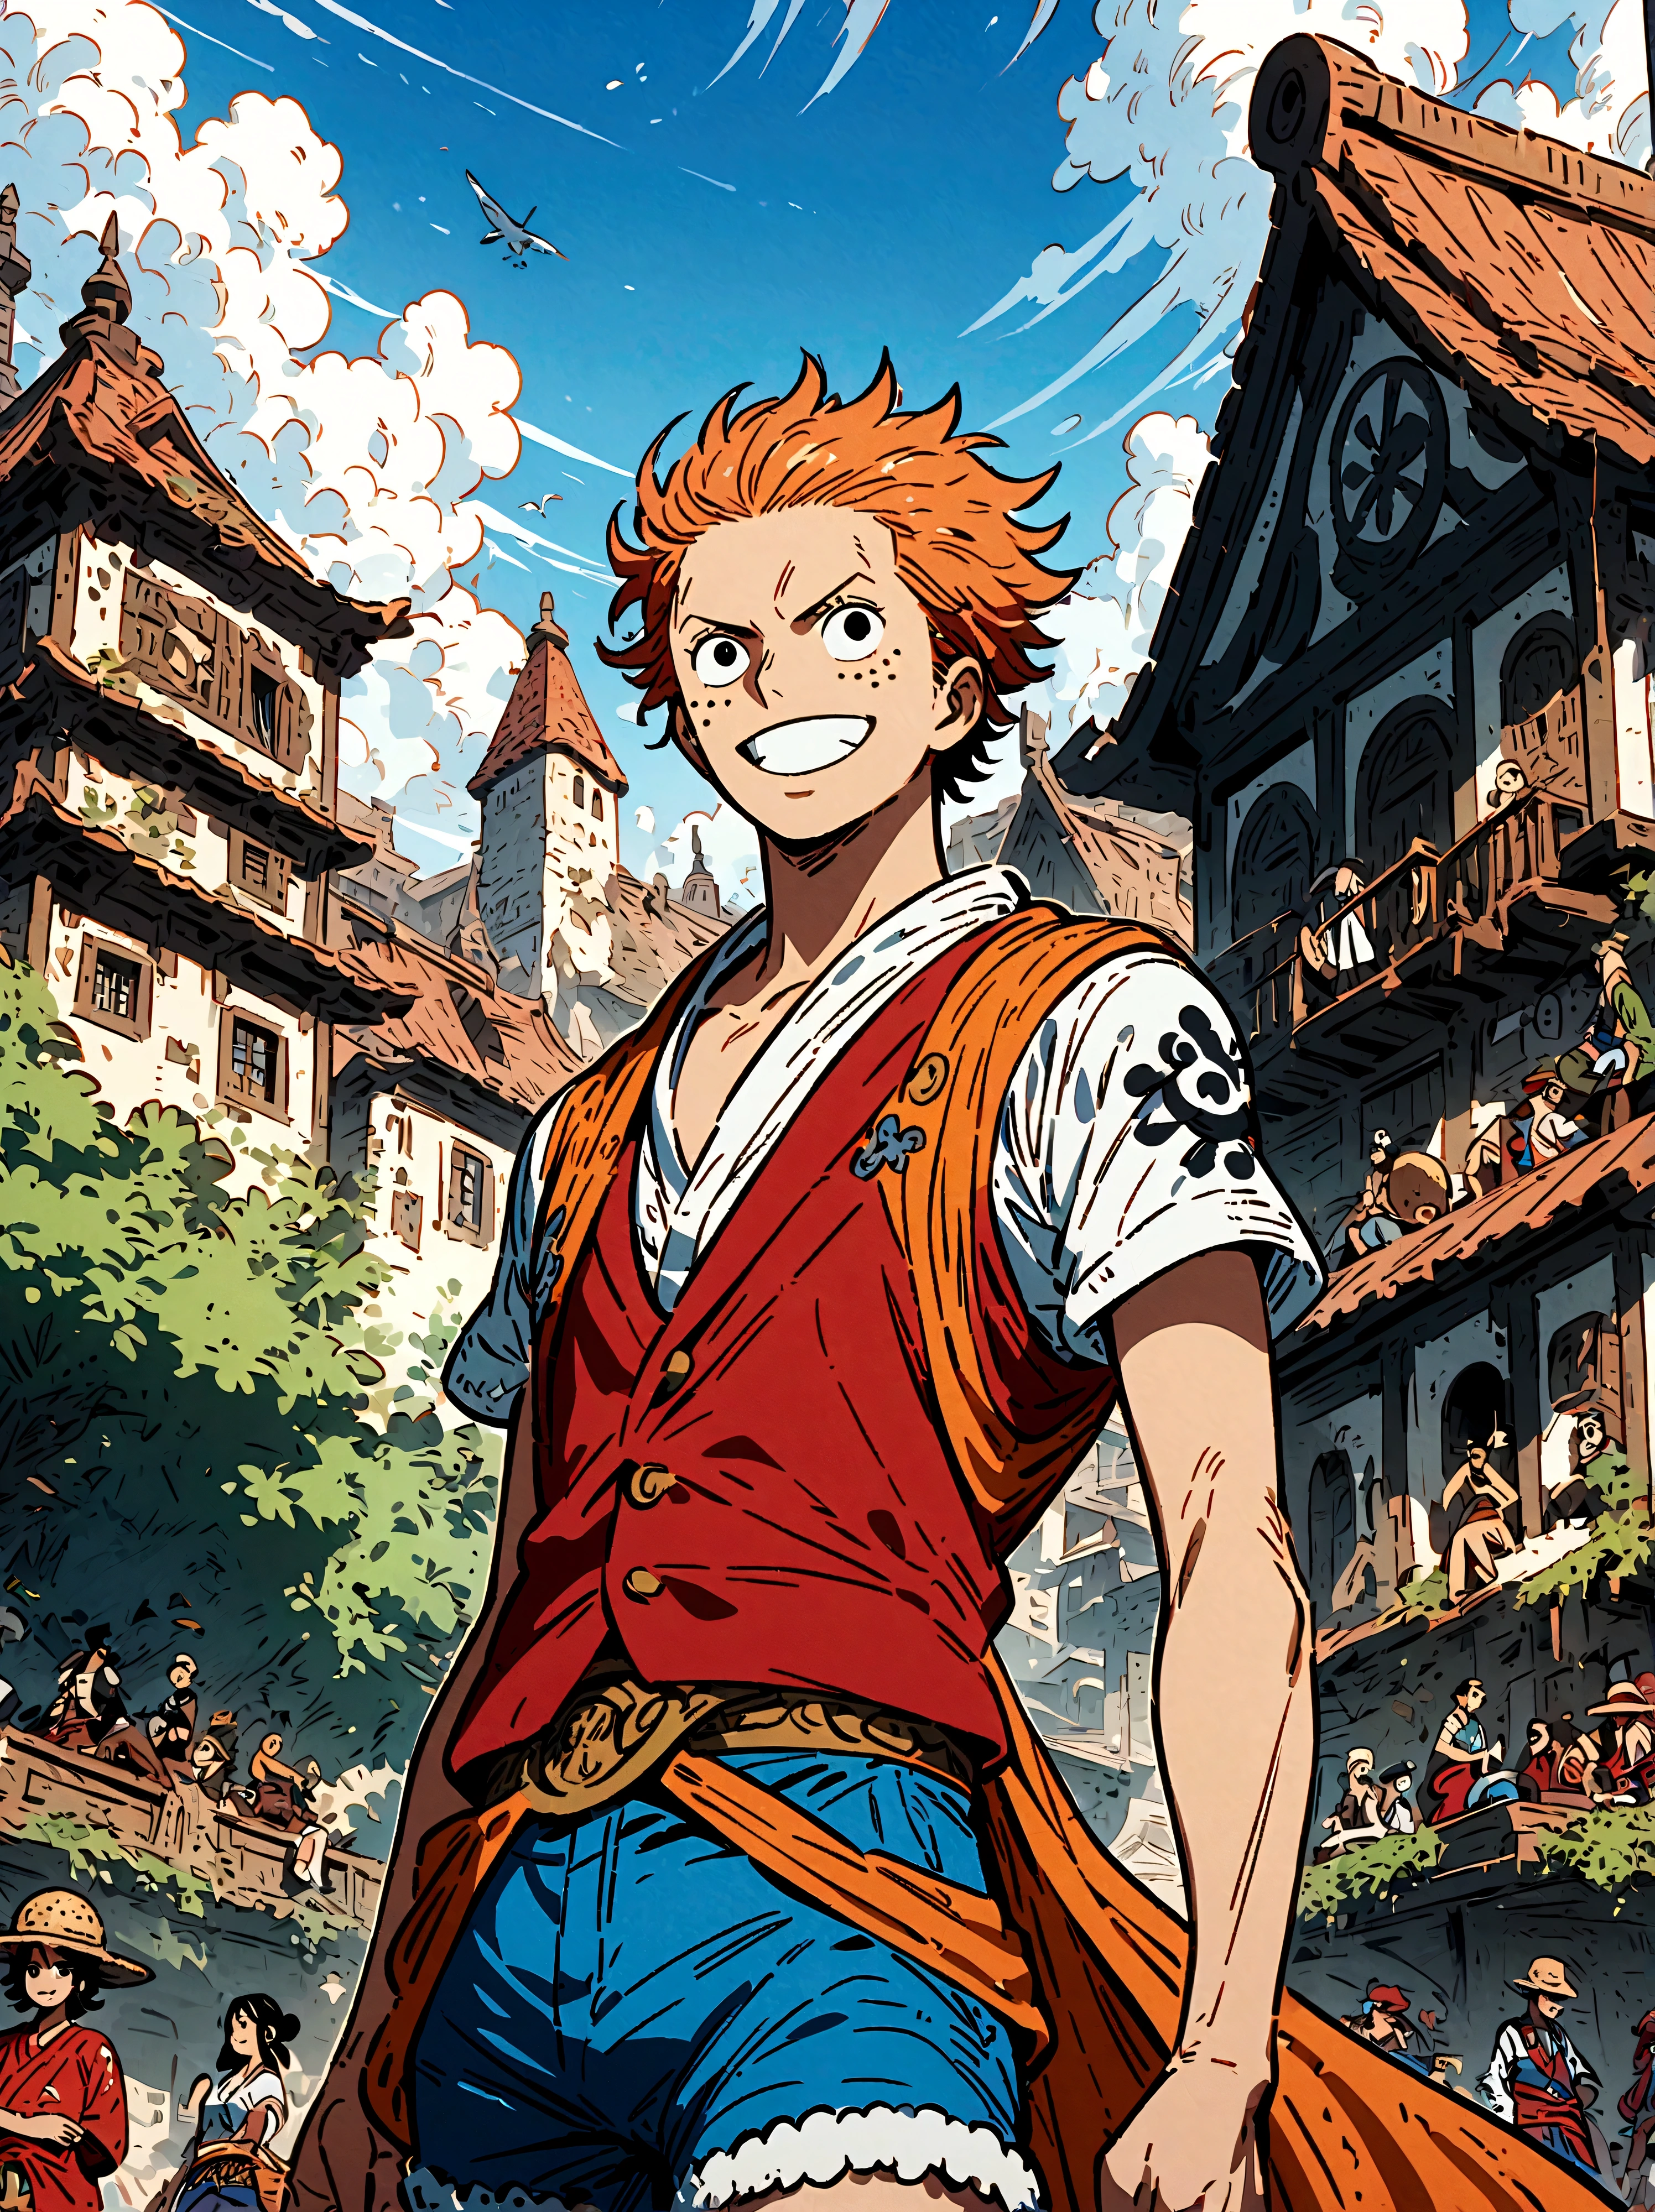 Anime japonais One Piece, Créez une illustration expansive rappelant la populaire série animée d&#39;action-aventure. Il devrait y avoir un groupe différent d&#39;explorateurs courageux. Chaque personnage a sa propre singularité. L&#39;un est grand et mince、Un homme aux pointes noires, porter un gilet rouge, short bleu, et un chapeau de paille. Sa personnalité joyeuse et son amour de l&#39;aventure se reflètent dans son sourire éclatant.. Un autre personnage est un homme aux cheveux lissés en arrière., Cheveux vert mousse clair mi-longs, Vêtu de vêtements bordeaux exquis, Son attitude reflète sa dignité et sa maturité.. Le troisième personnage est une jeune femme belle et élégante, Elle a les cheveux orange，Porter un gilet simple et une mini-jupe. La magnifique mer bleue couvre tout l&#39;arrière-plan, Cela ajoute une atmosphère dangereuse et excitante à toute la scène.